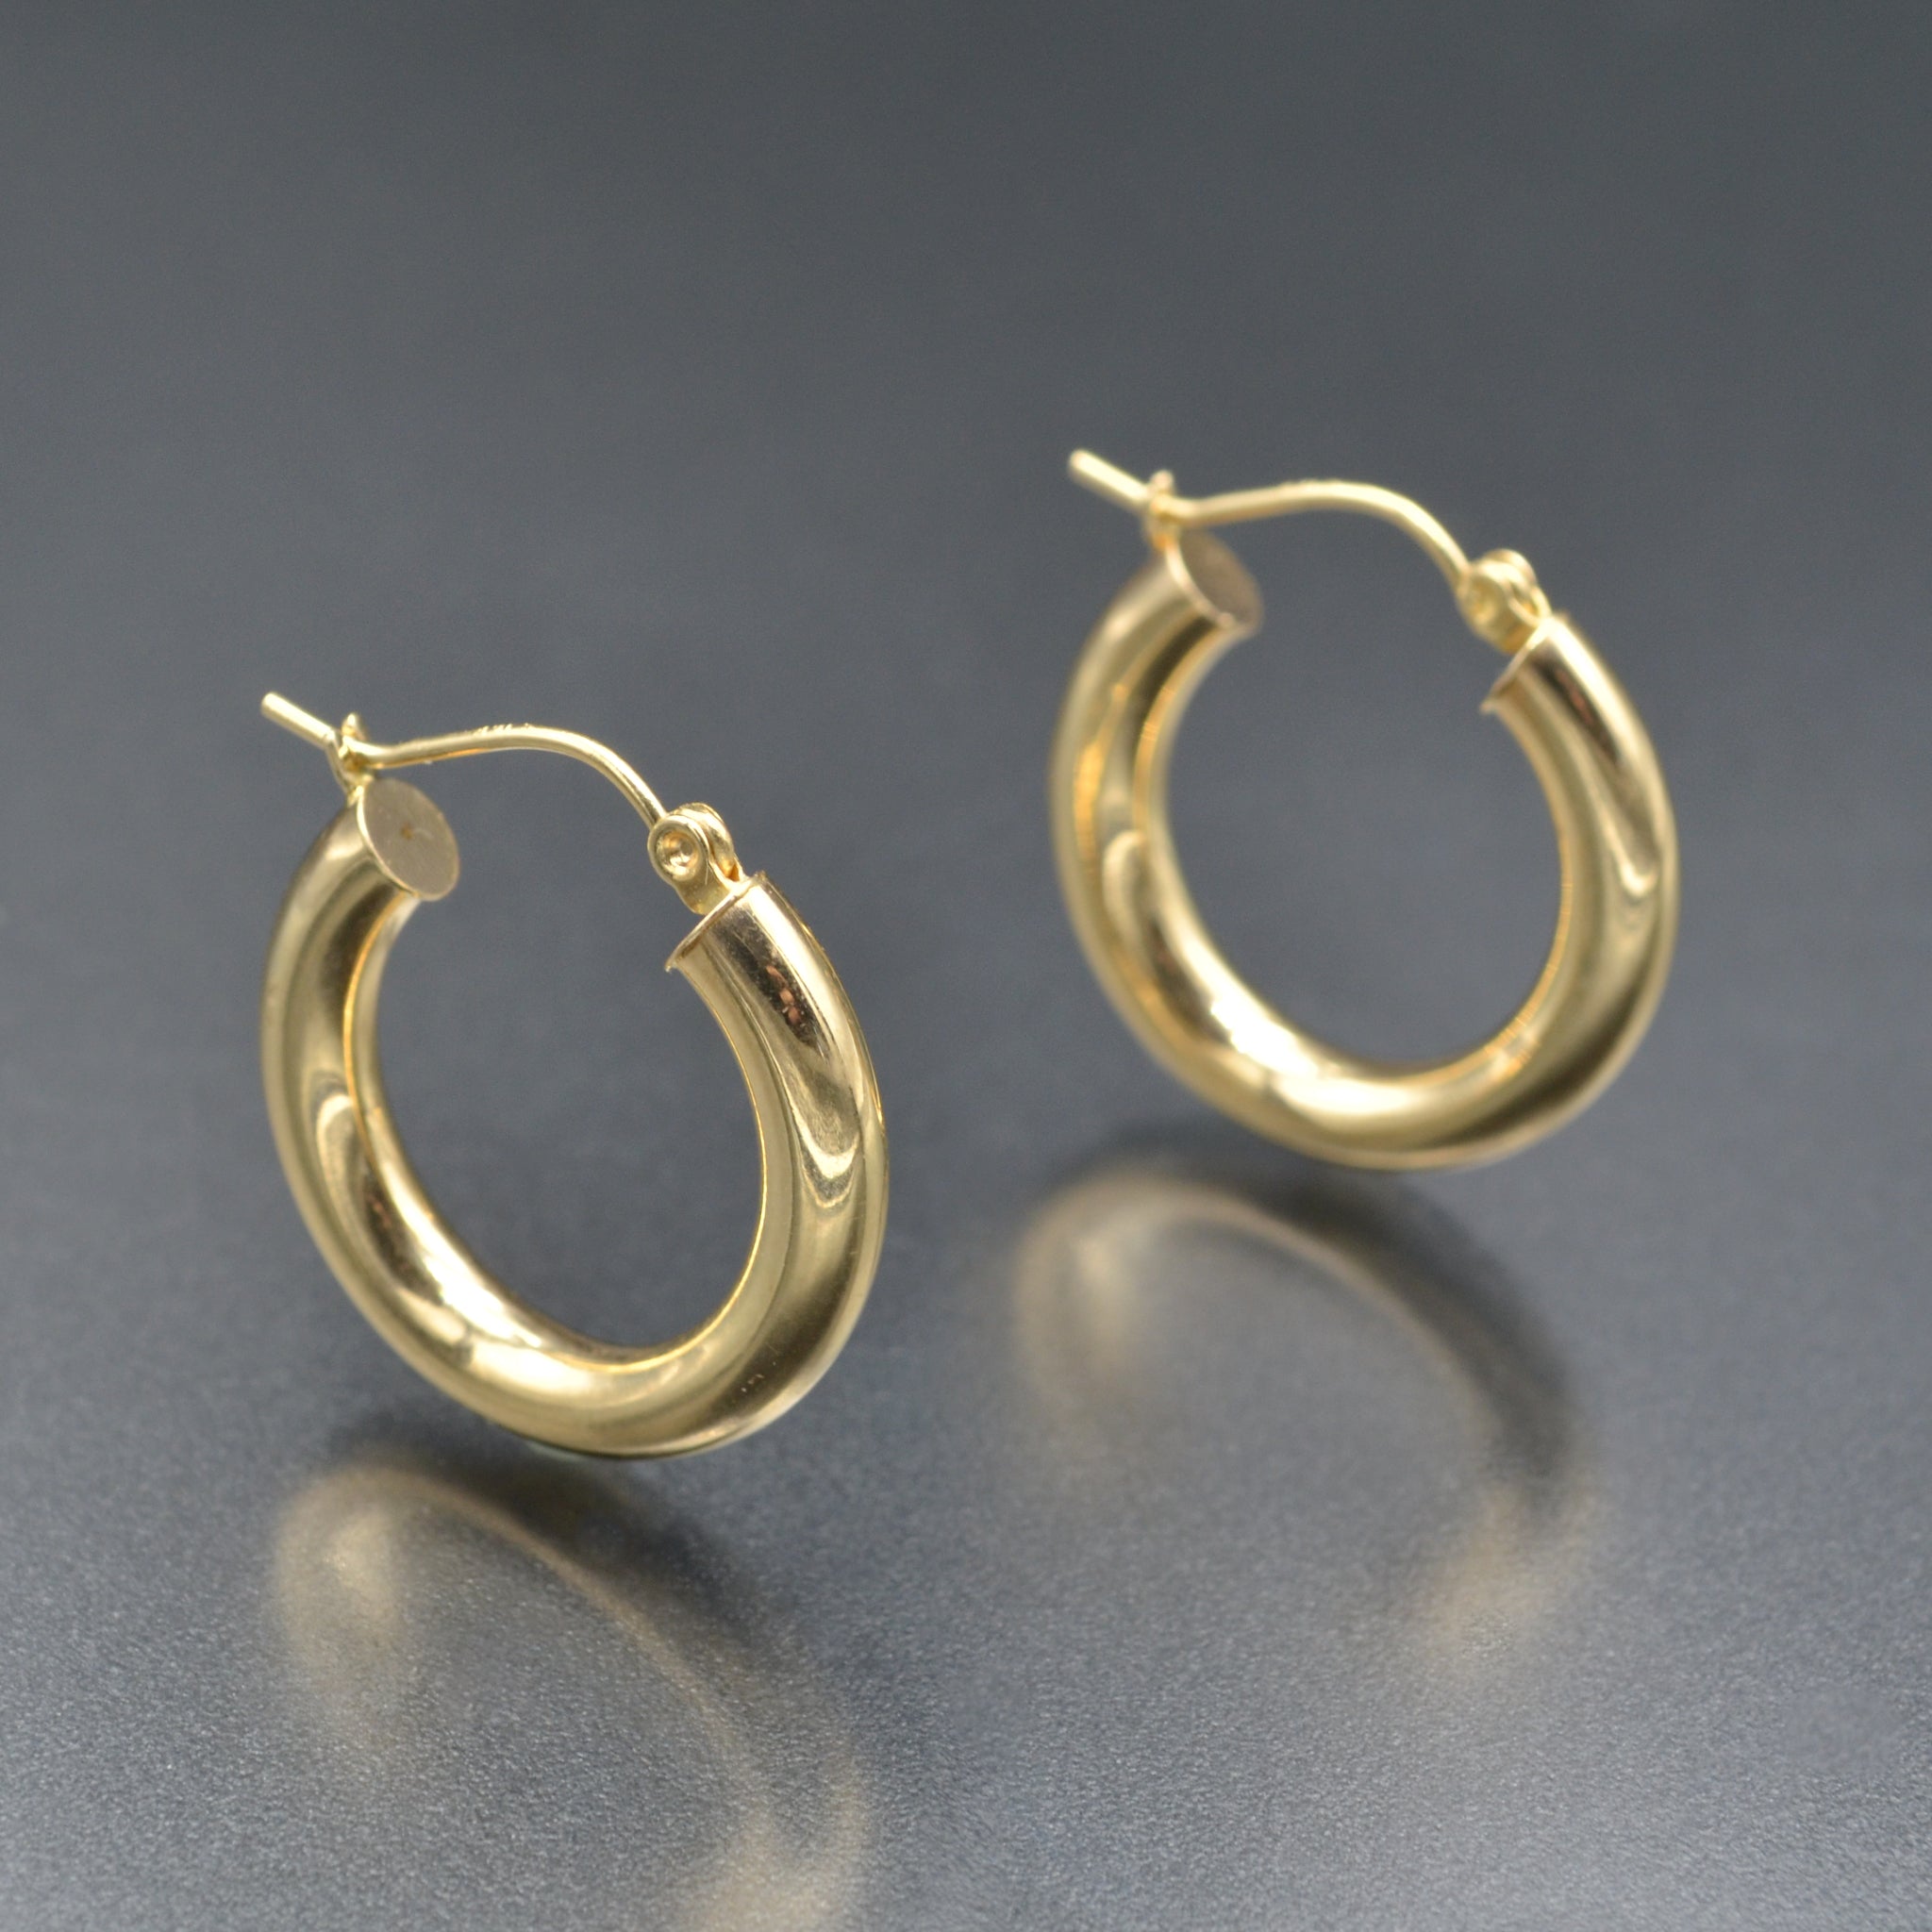 Buy Creative Korean Style Rose Gold Plated Hoop Earrings Online – The  Jewelbox